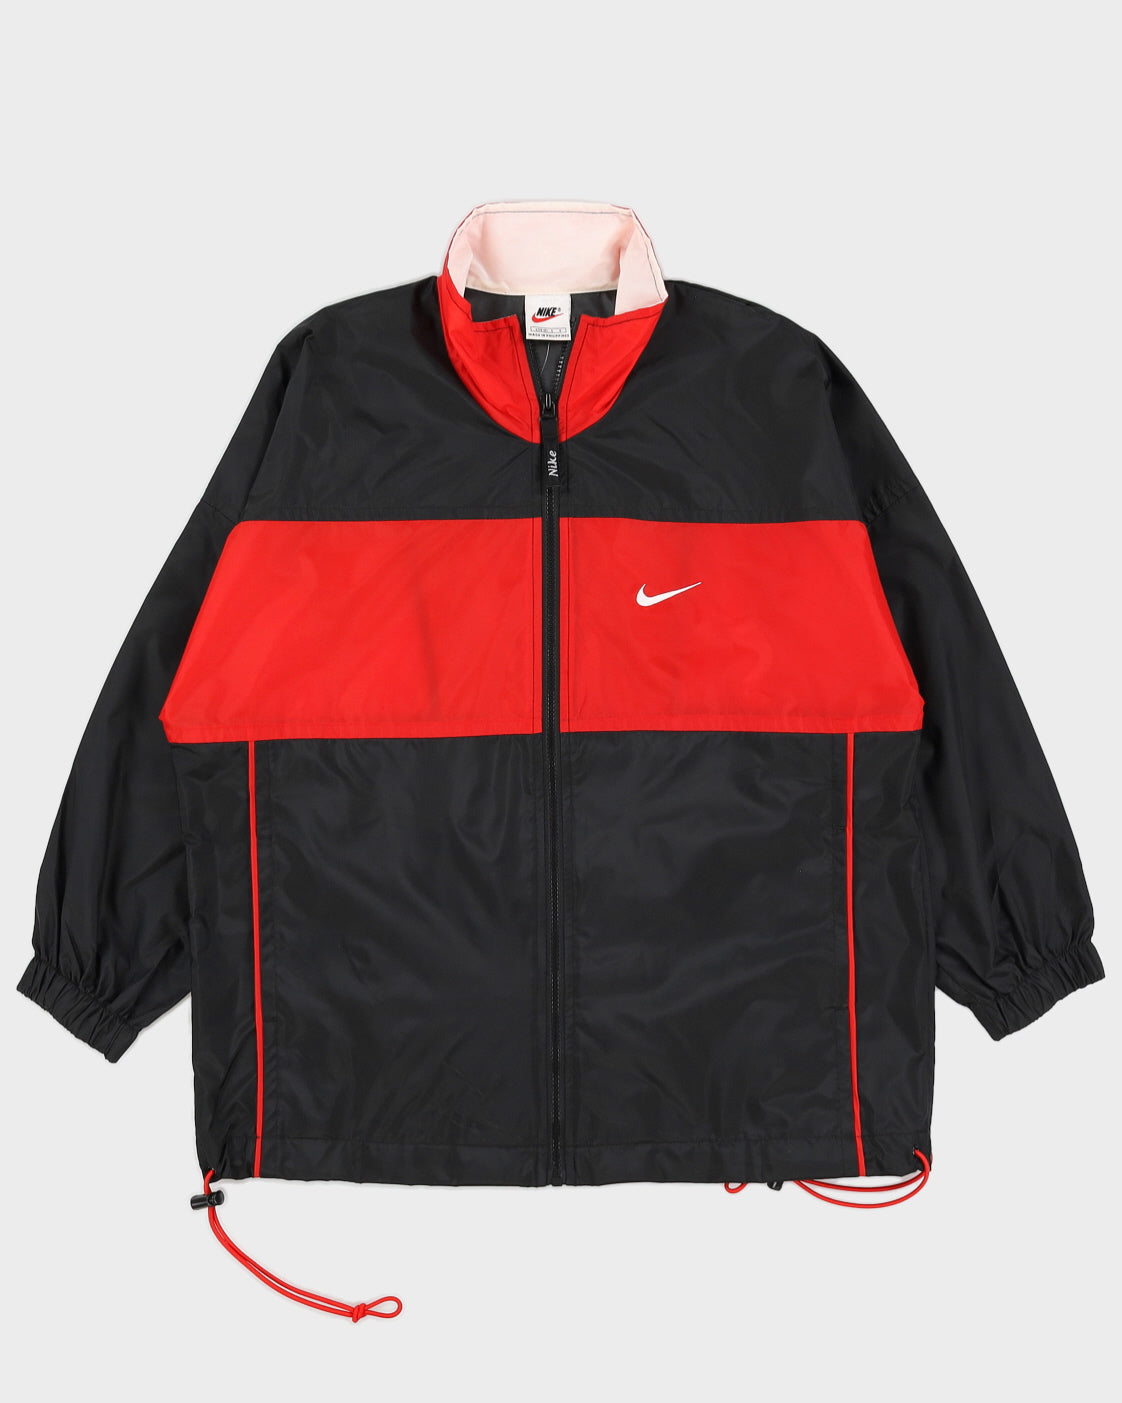 Chaqueta Nike vintage de los años 90 negra / roja - m – Rokit